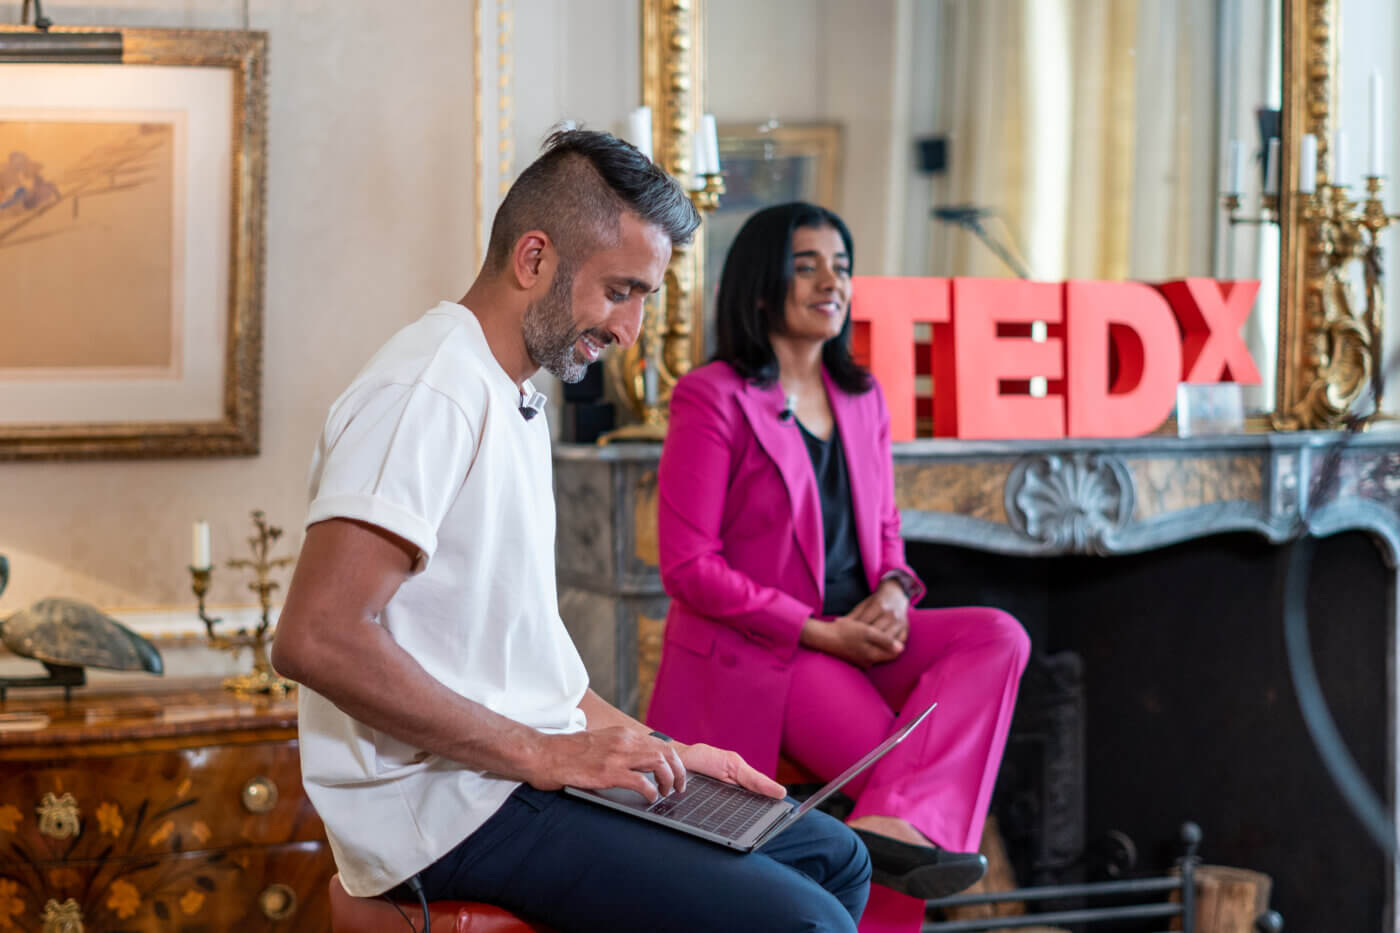 Salmaan is a boardmember of TedxAmsterdam